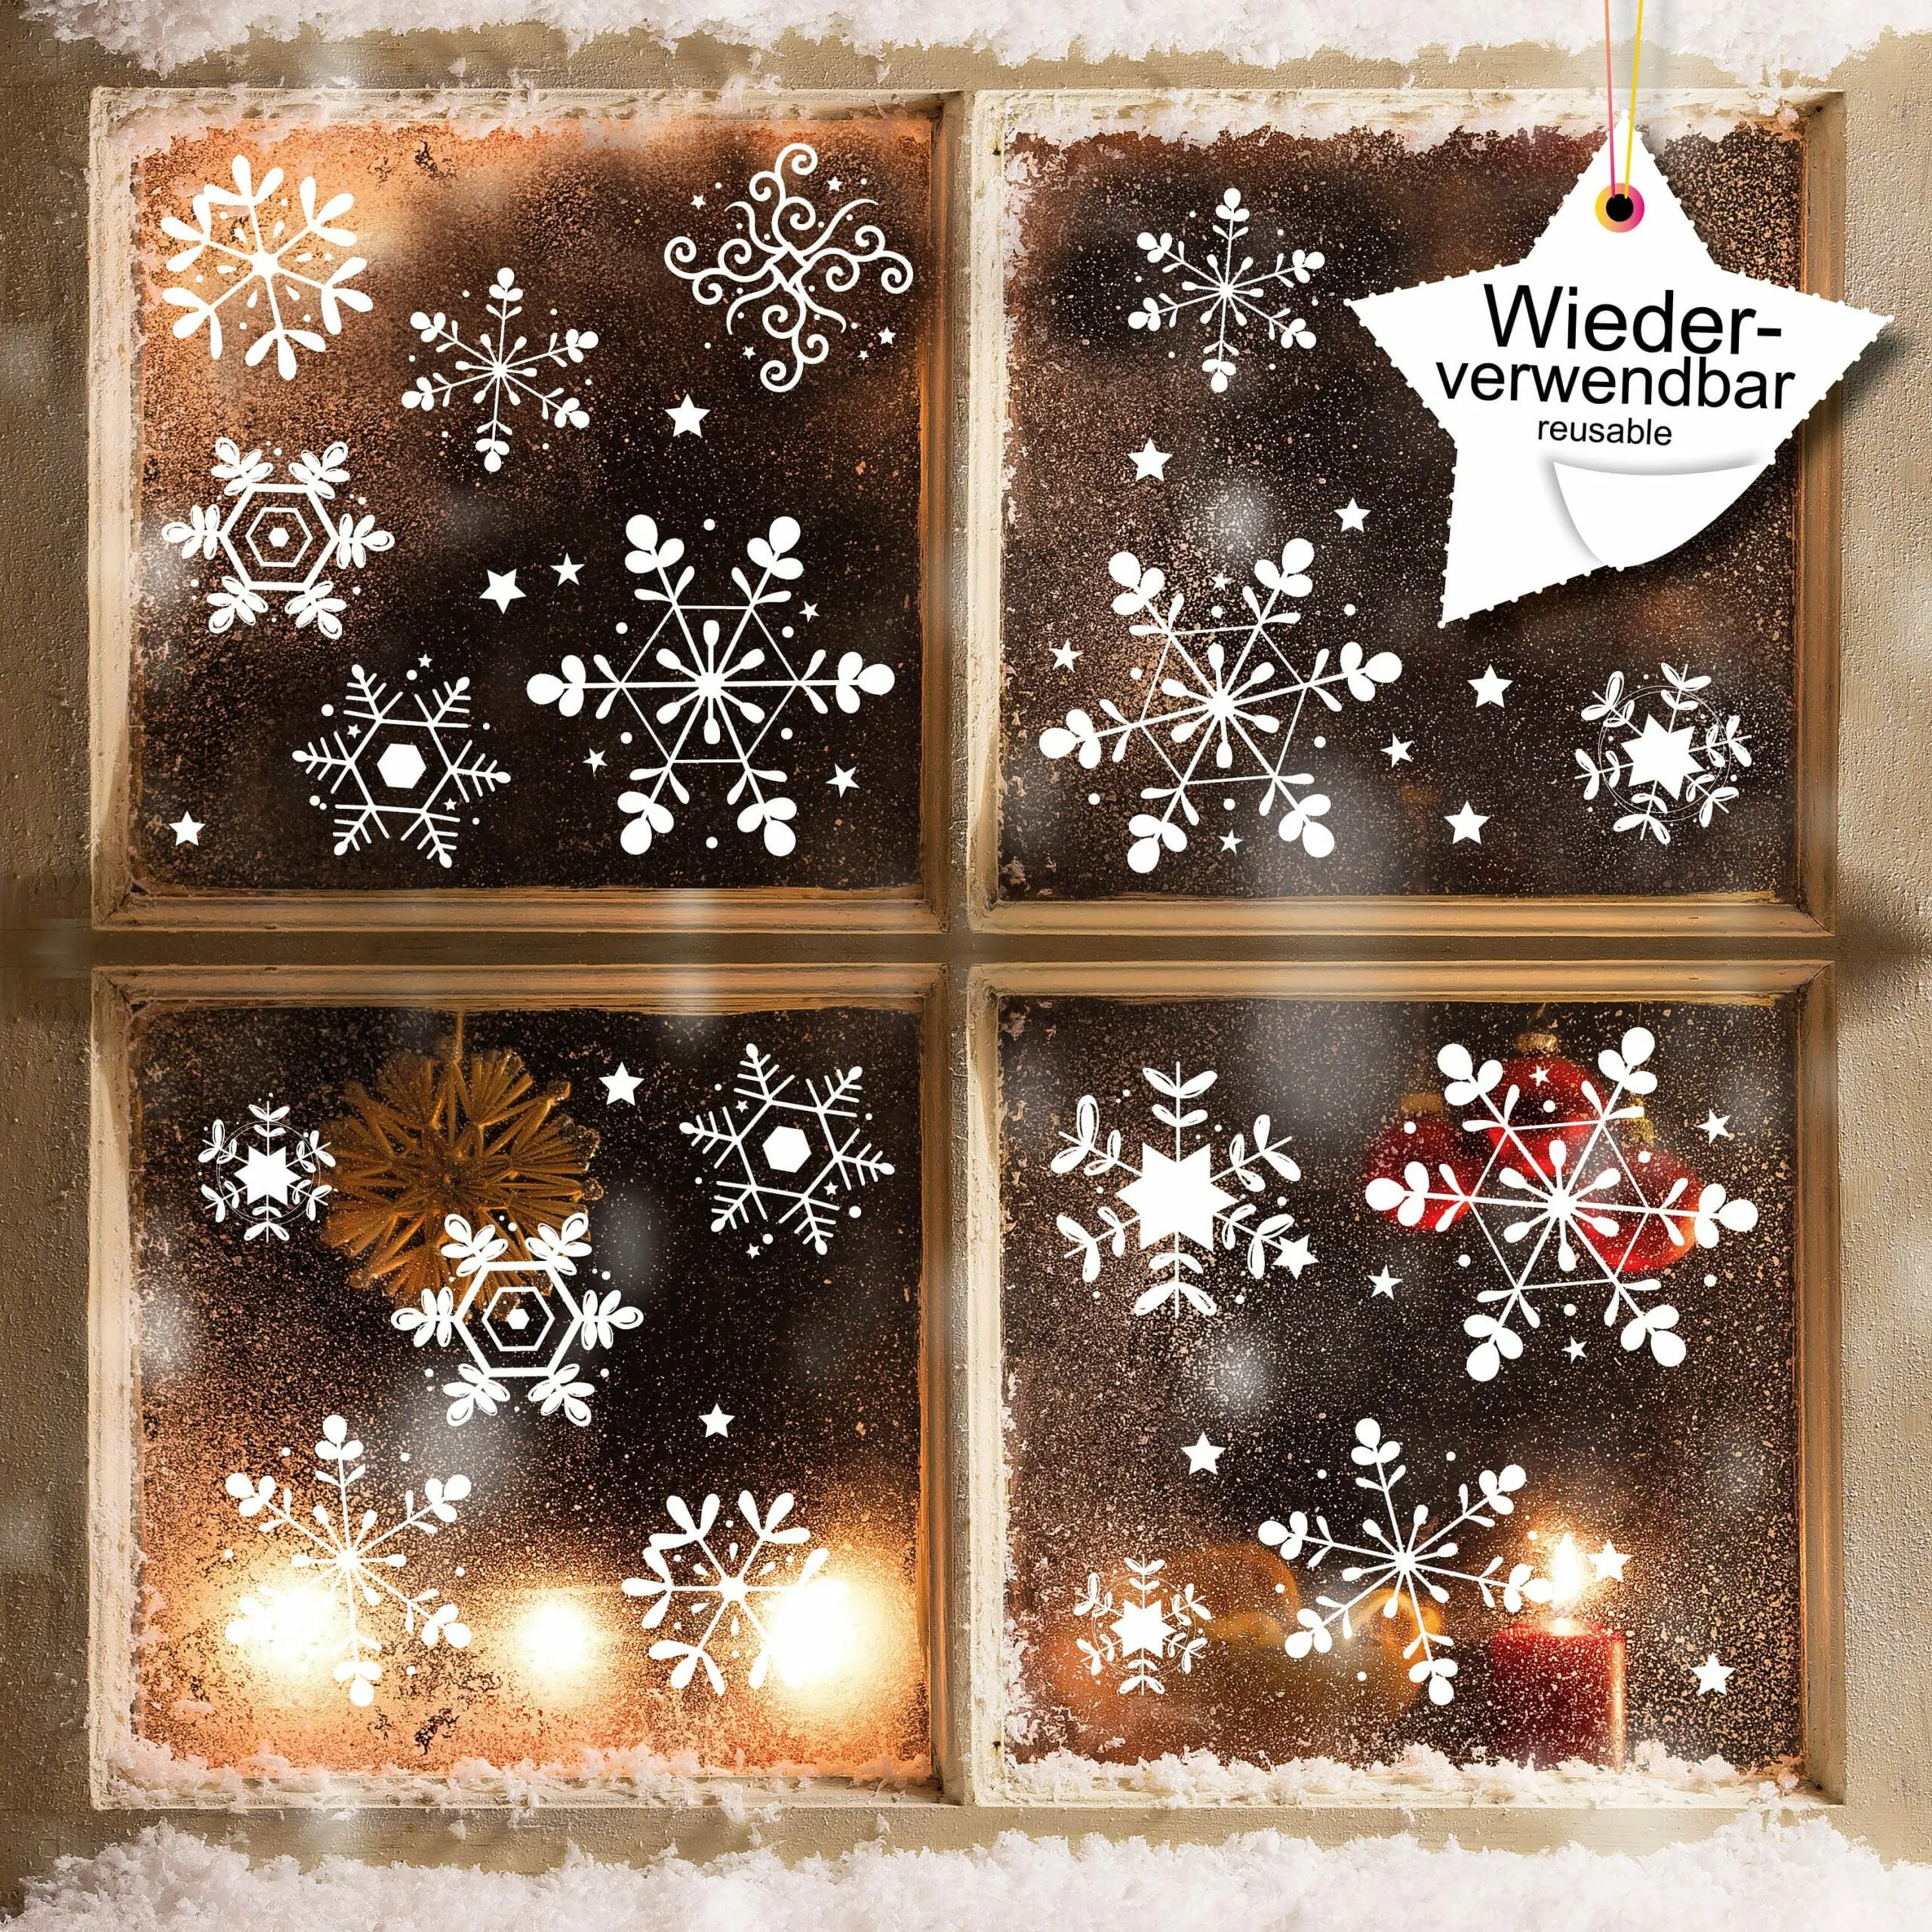 | Weihnachtsdeko Nr. Loft Fensterbild Adventsdeko Set Wandtattoo 1 Fenster, WIEDERVERWENDBAR Schneeflocken